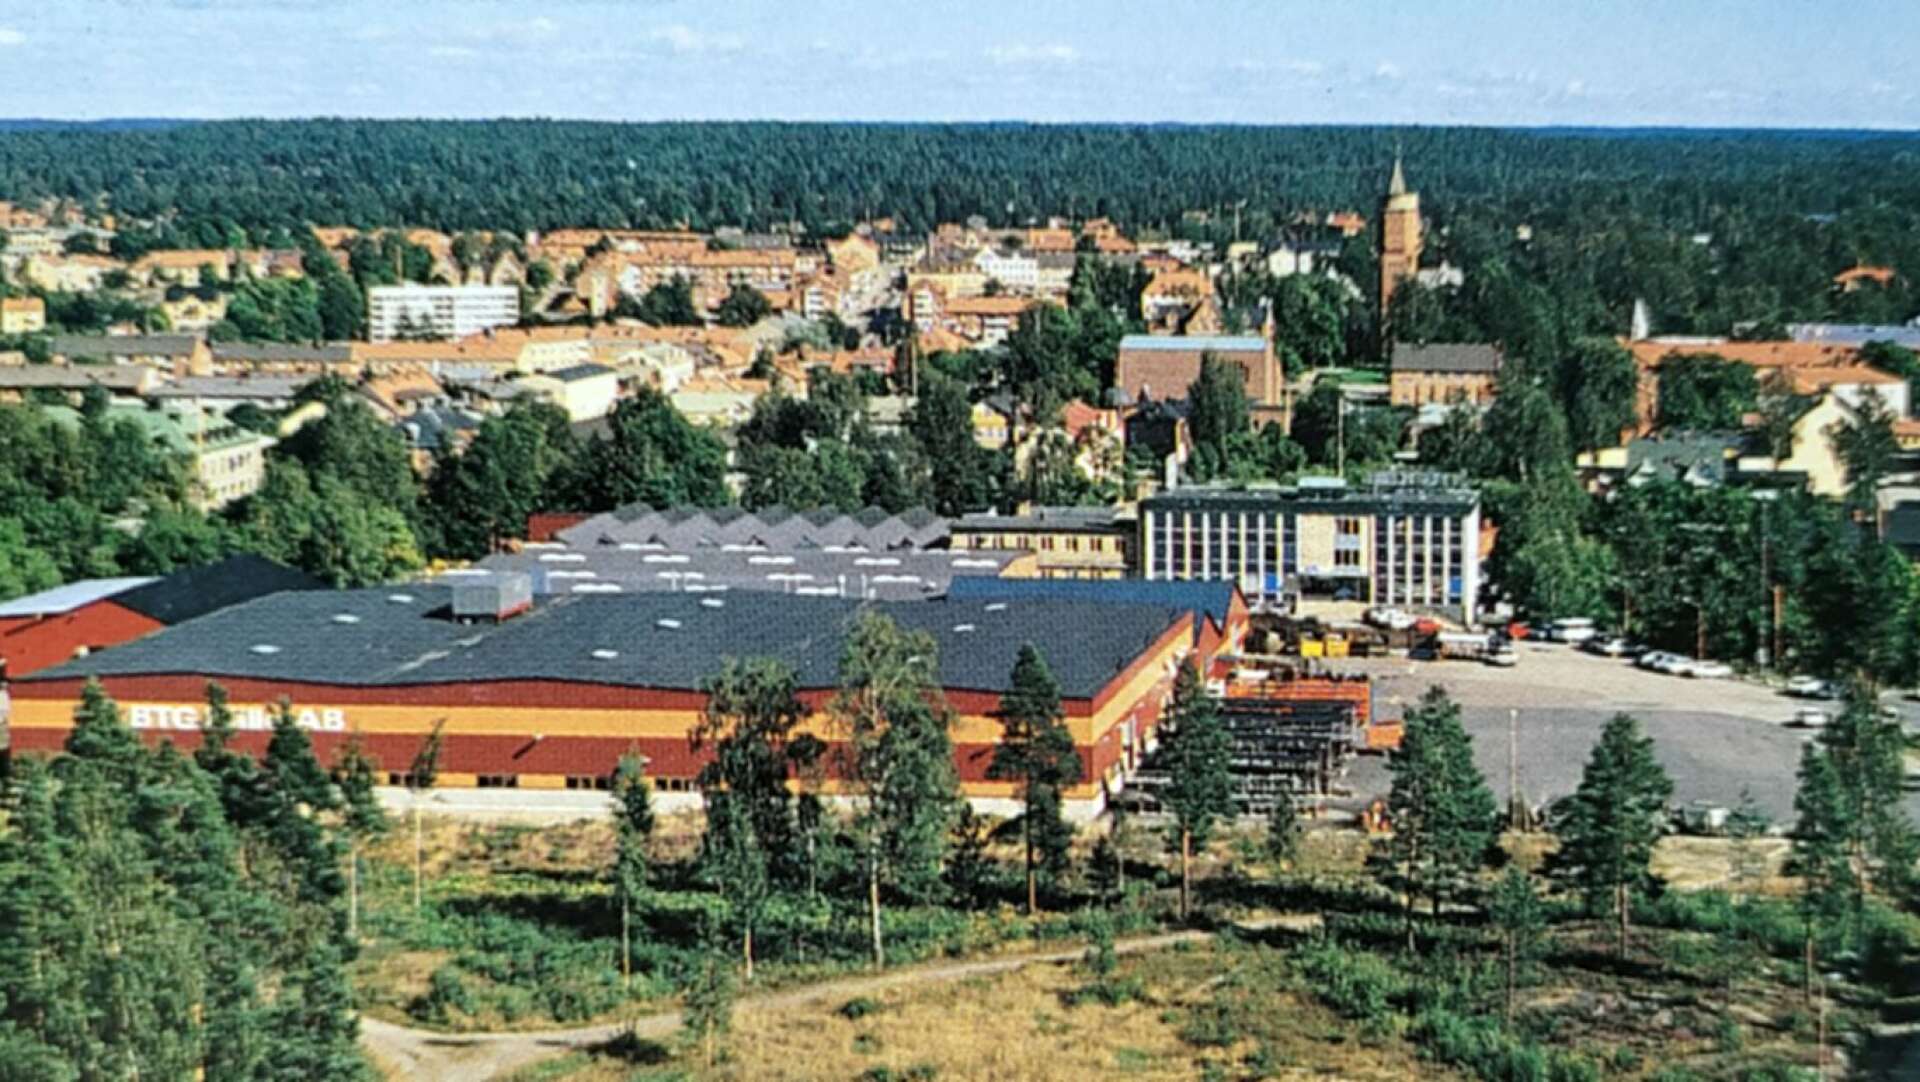 Det som startats som Källe-Regulatorer växte successivt och på 1980-talet utökades bland annat verkstadsytorna markant. Bilden visar fabriksanläggningen som den såg ut vid mitten av 1980-talet. 